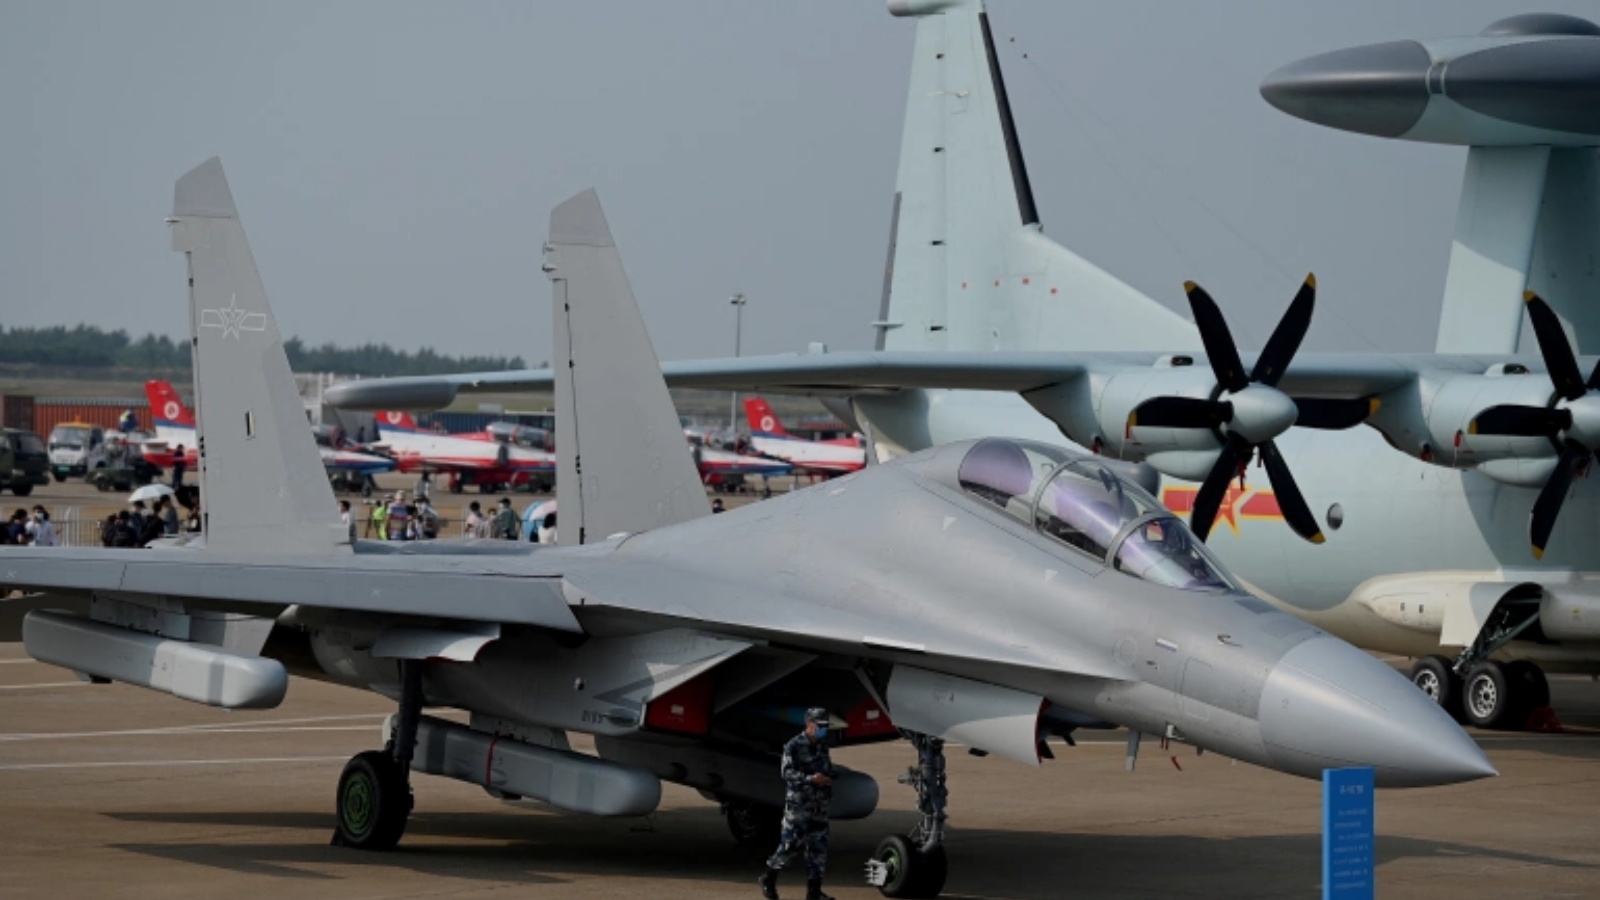 المقاتلة الهجومية متعددة المهام J-16 التابعة لشركة شنيانغ للطائرات في معرض الصين الدولي الثالث عشر للطيران والفضاء في تشوهاى بمقاطعة قوانغدونغ جنوب الصين في 28 سبتمبر 2021